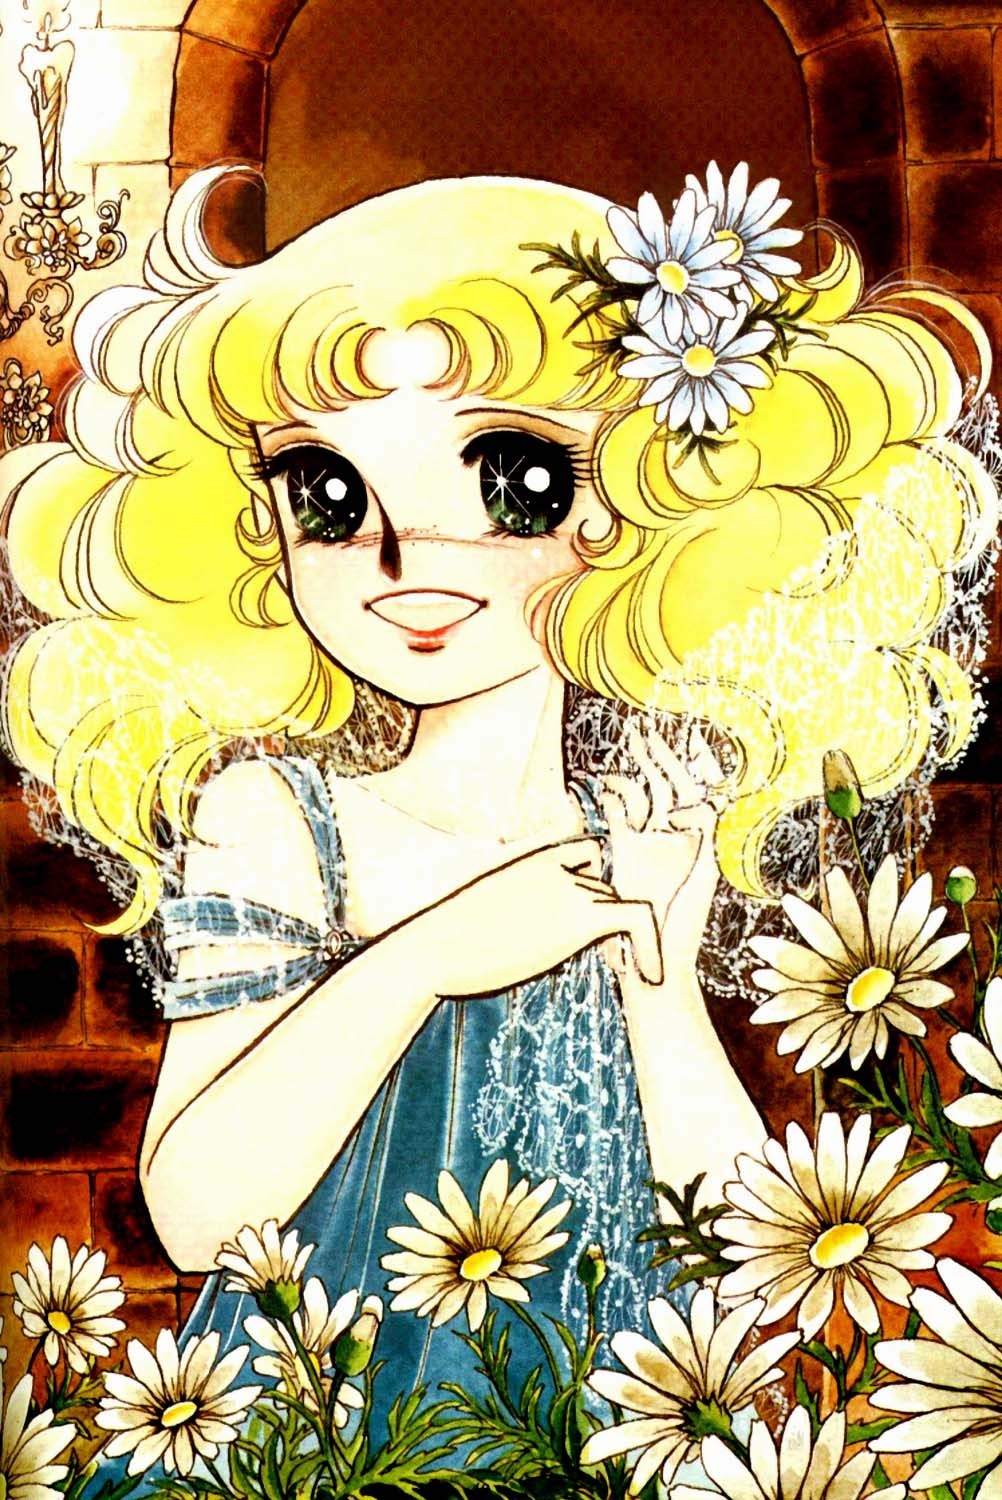 bộ sưu tập hình manga 1(sailor moon & candy) Candy-Candy-Artbook-candy-candy-9421649-1002-1500